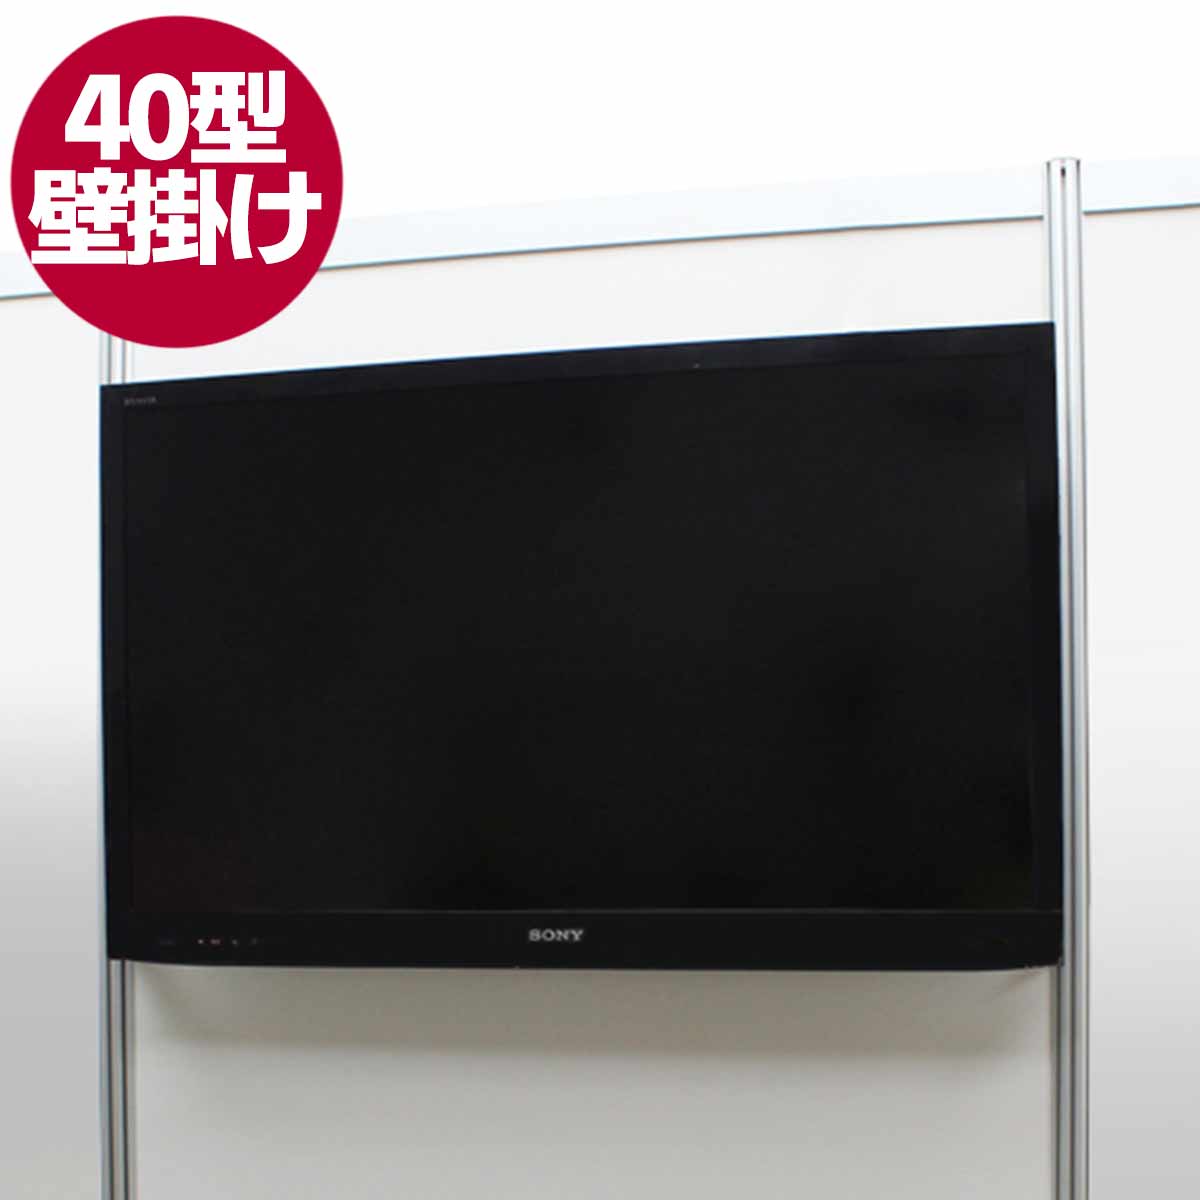 40型液晶テレビ(ブース壁掛)